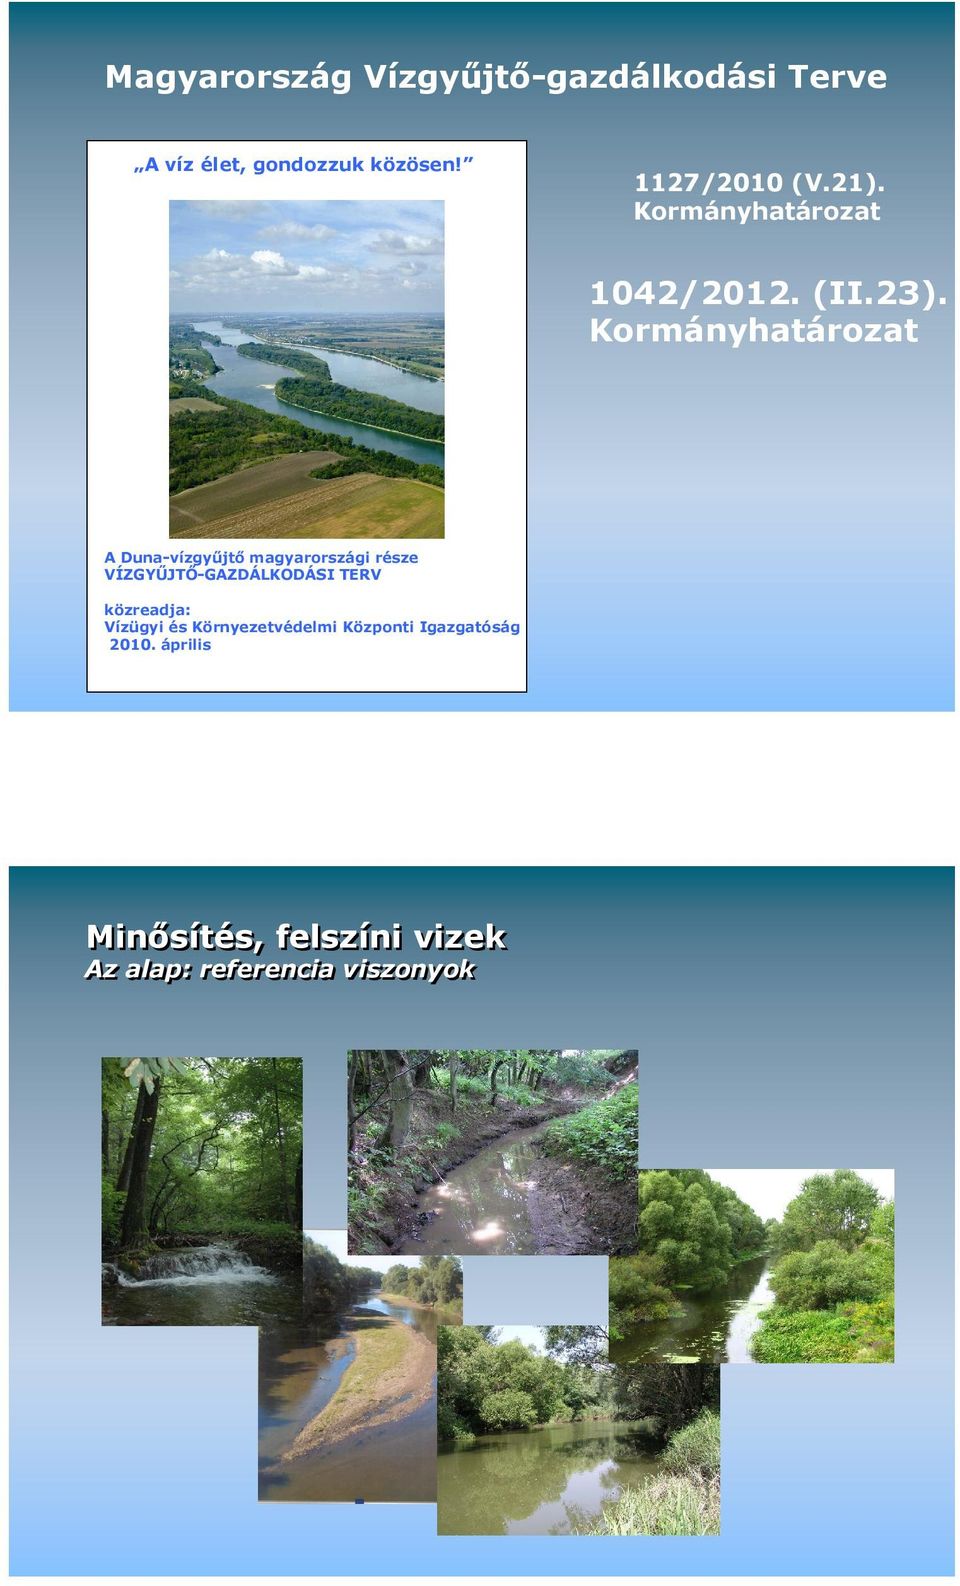 Kormányhatározat A Duna-vízgyőjtı magyarországi része VÍZGYŐJTİ-GAZDÁLKODÁSI TERV